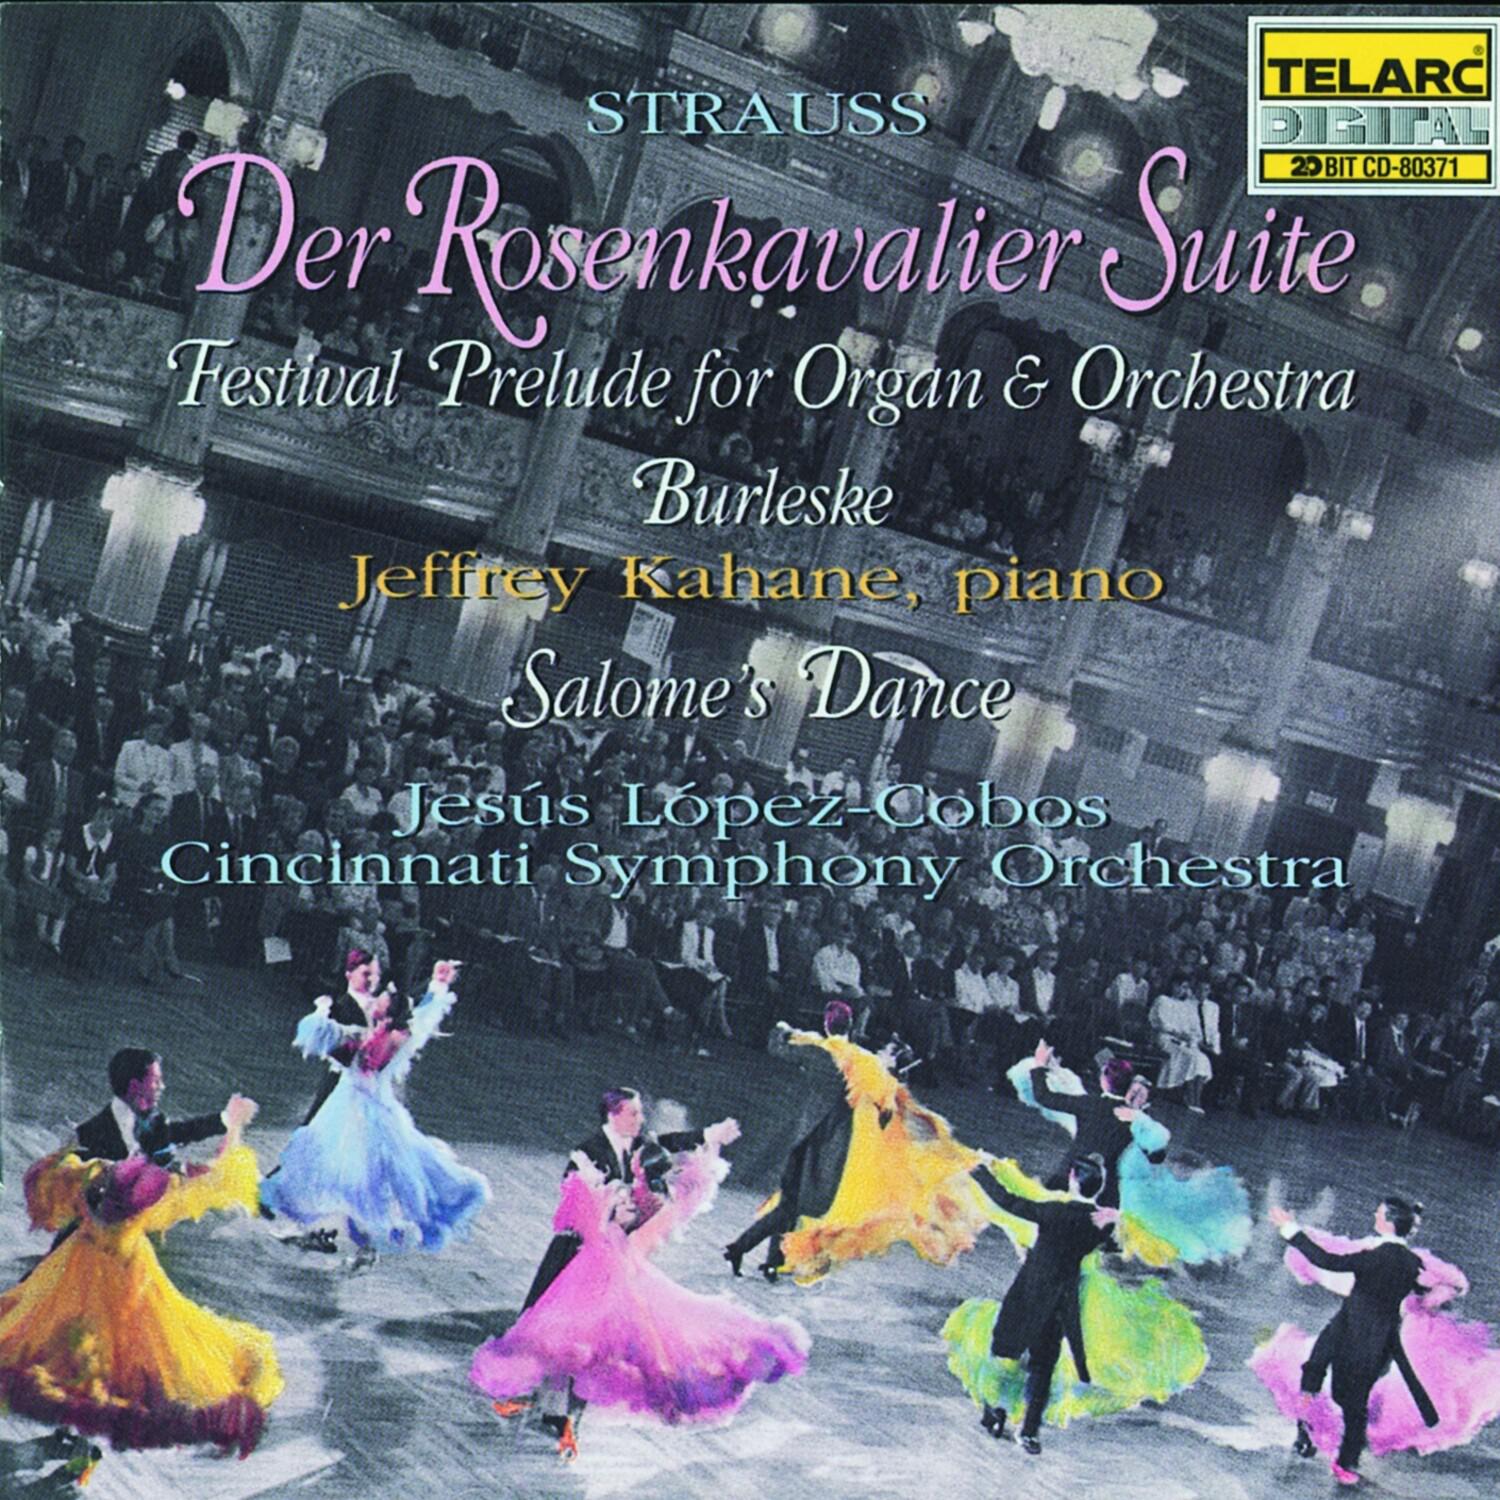 Suite from Der Rosenkavalier